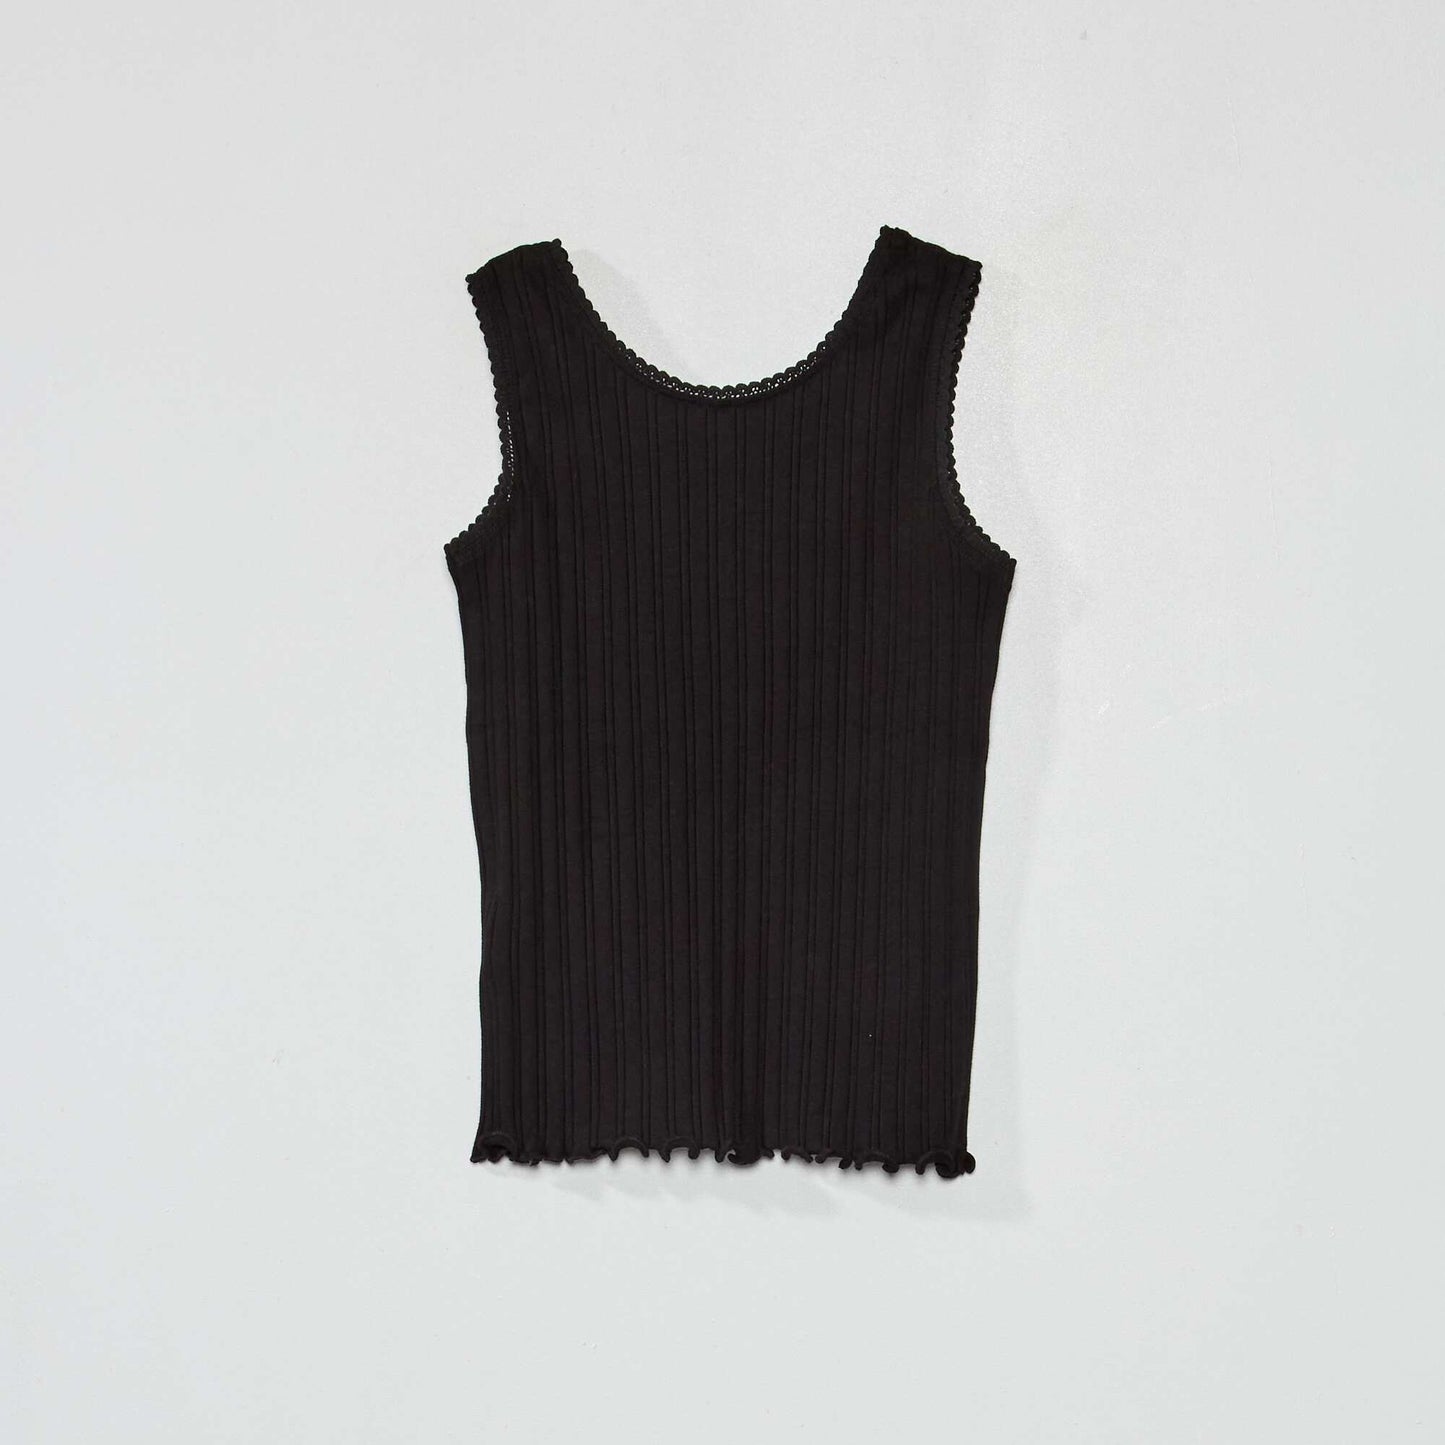 Ribbed knit vest top black